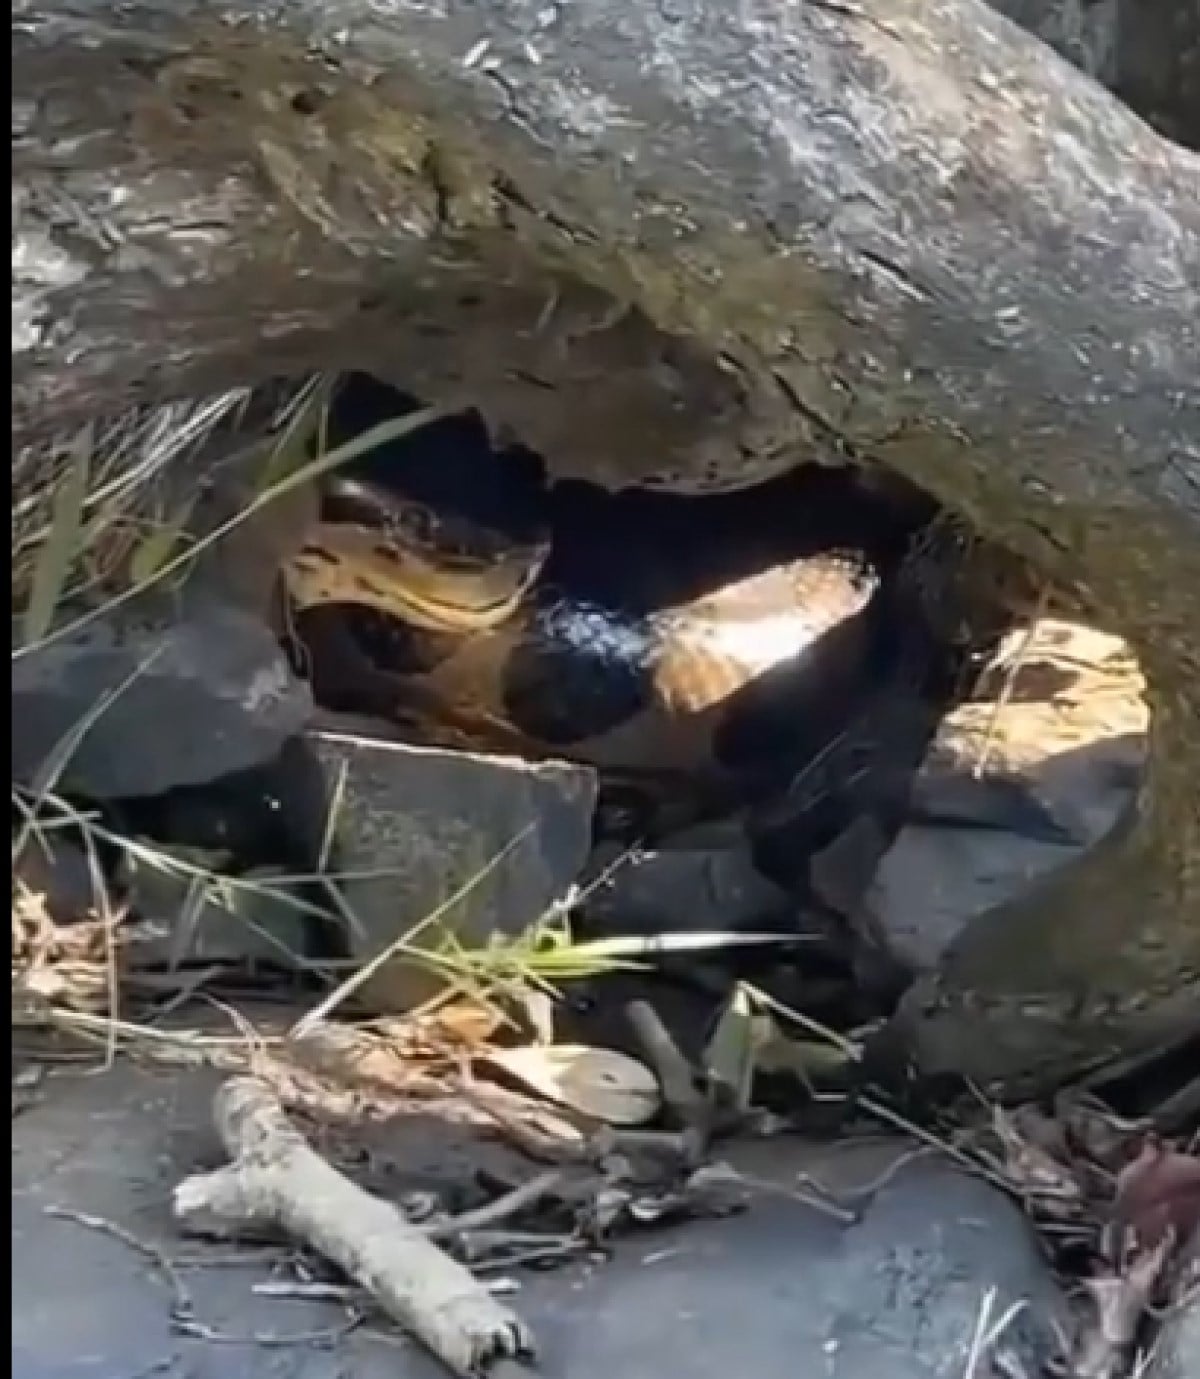 Vídeo impressionante mostra a maior cobra do Brasil em seu habitat natural